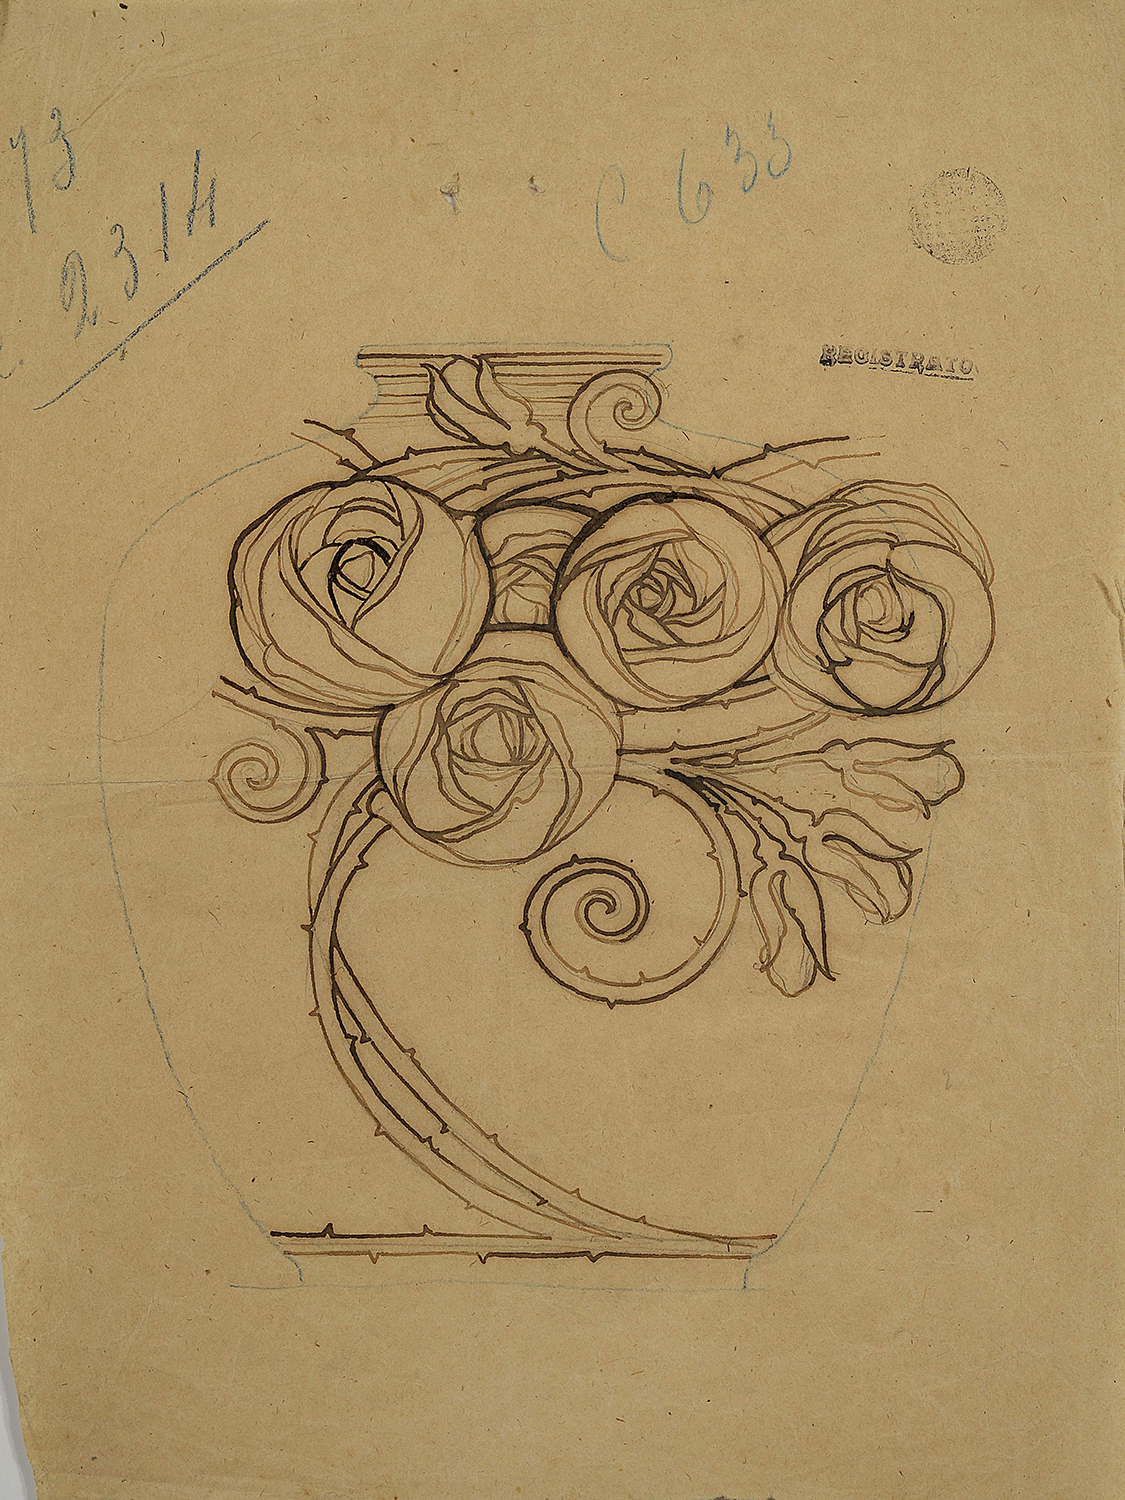 Studio per ornamento di un vaso con rose, 1906-1912, matita su carta, collezione privata